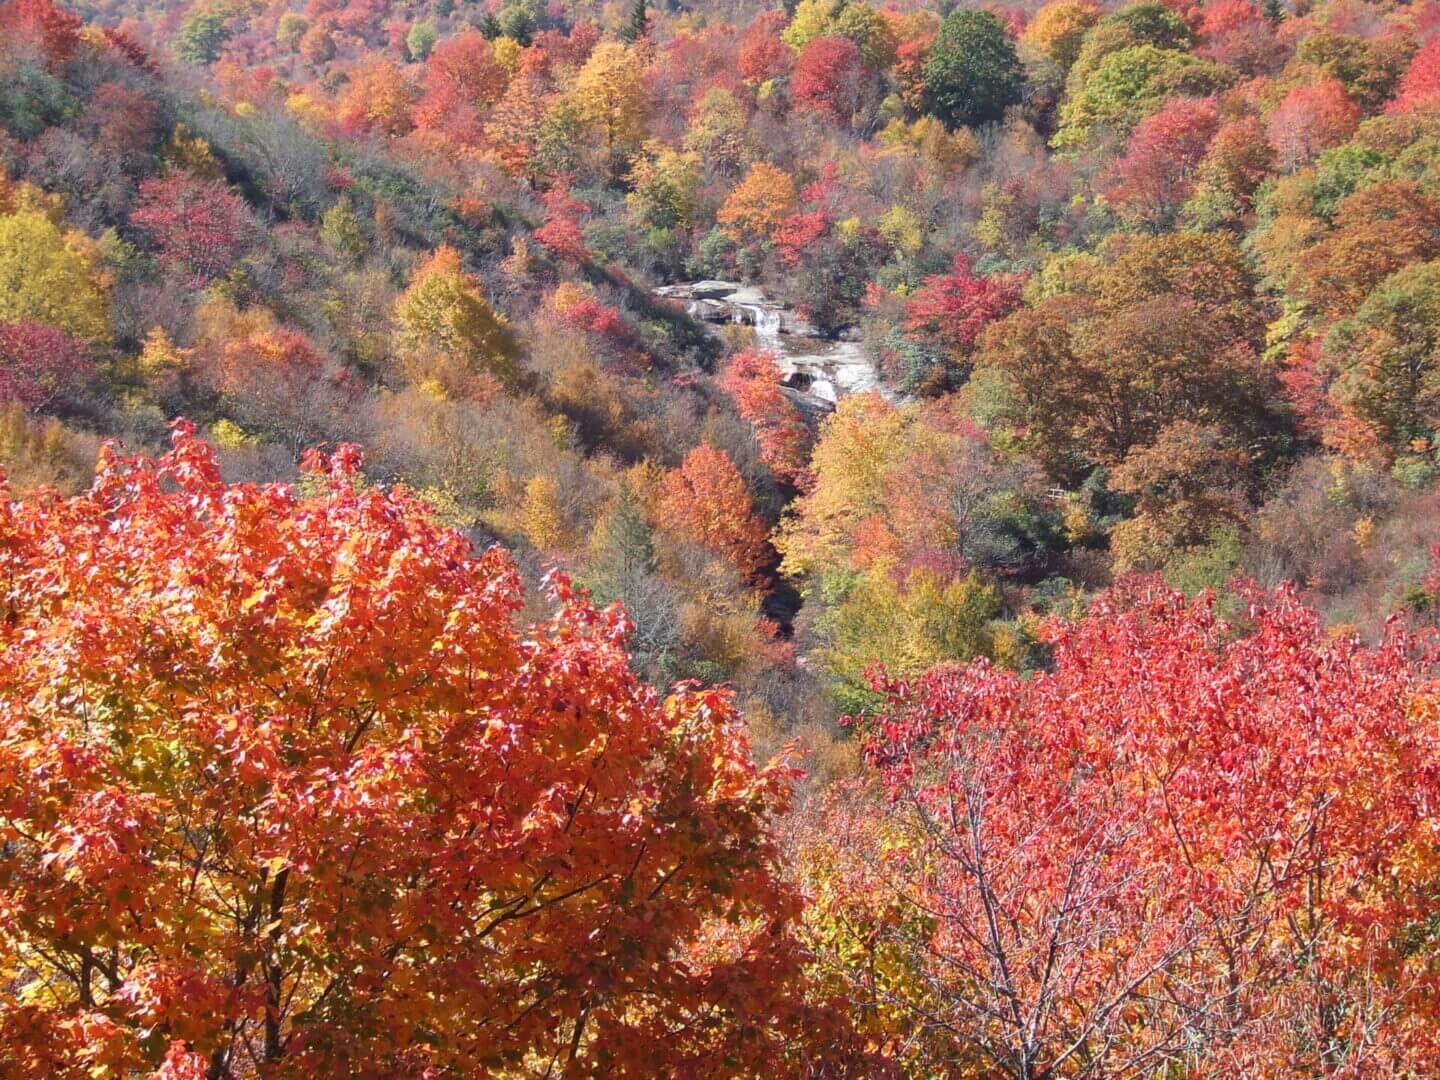 Autumn trees and foliage